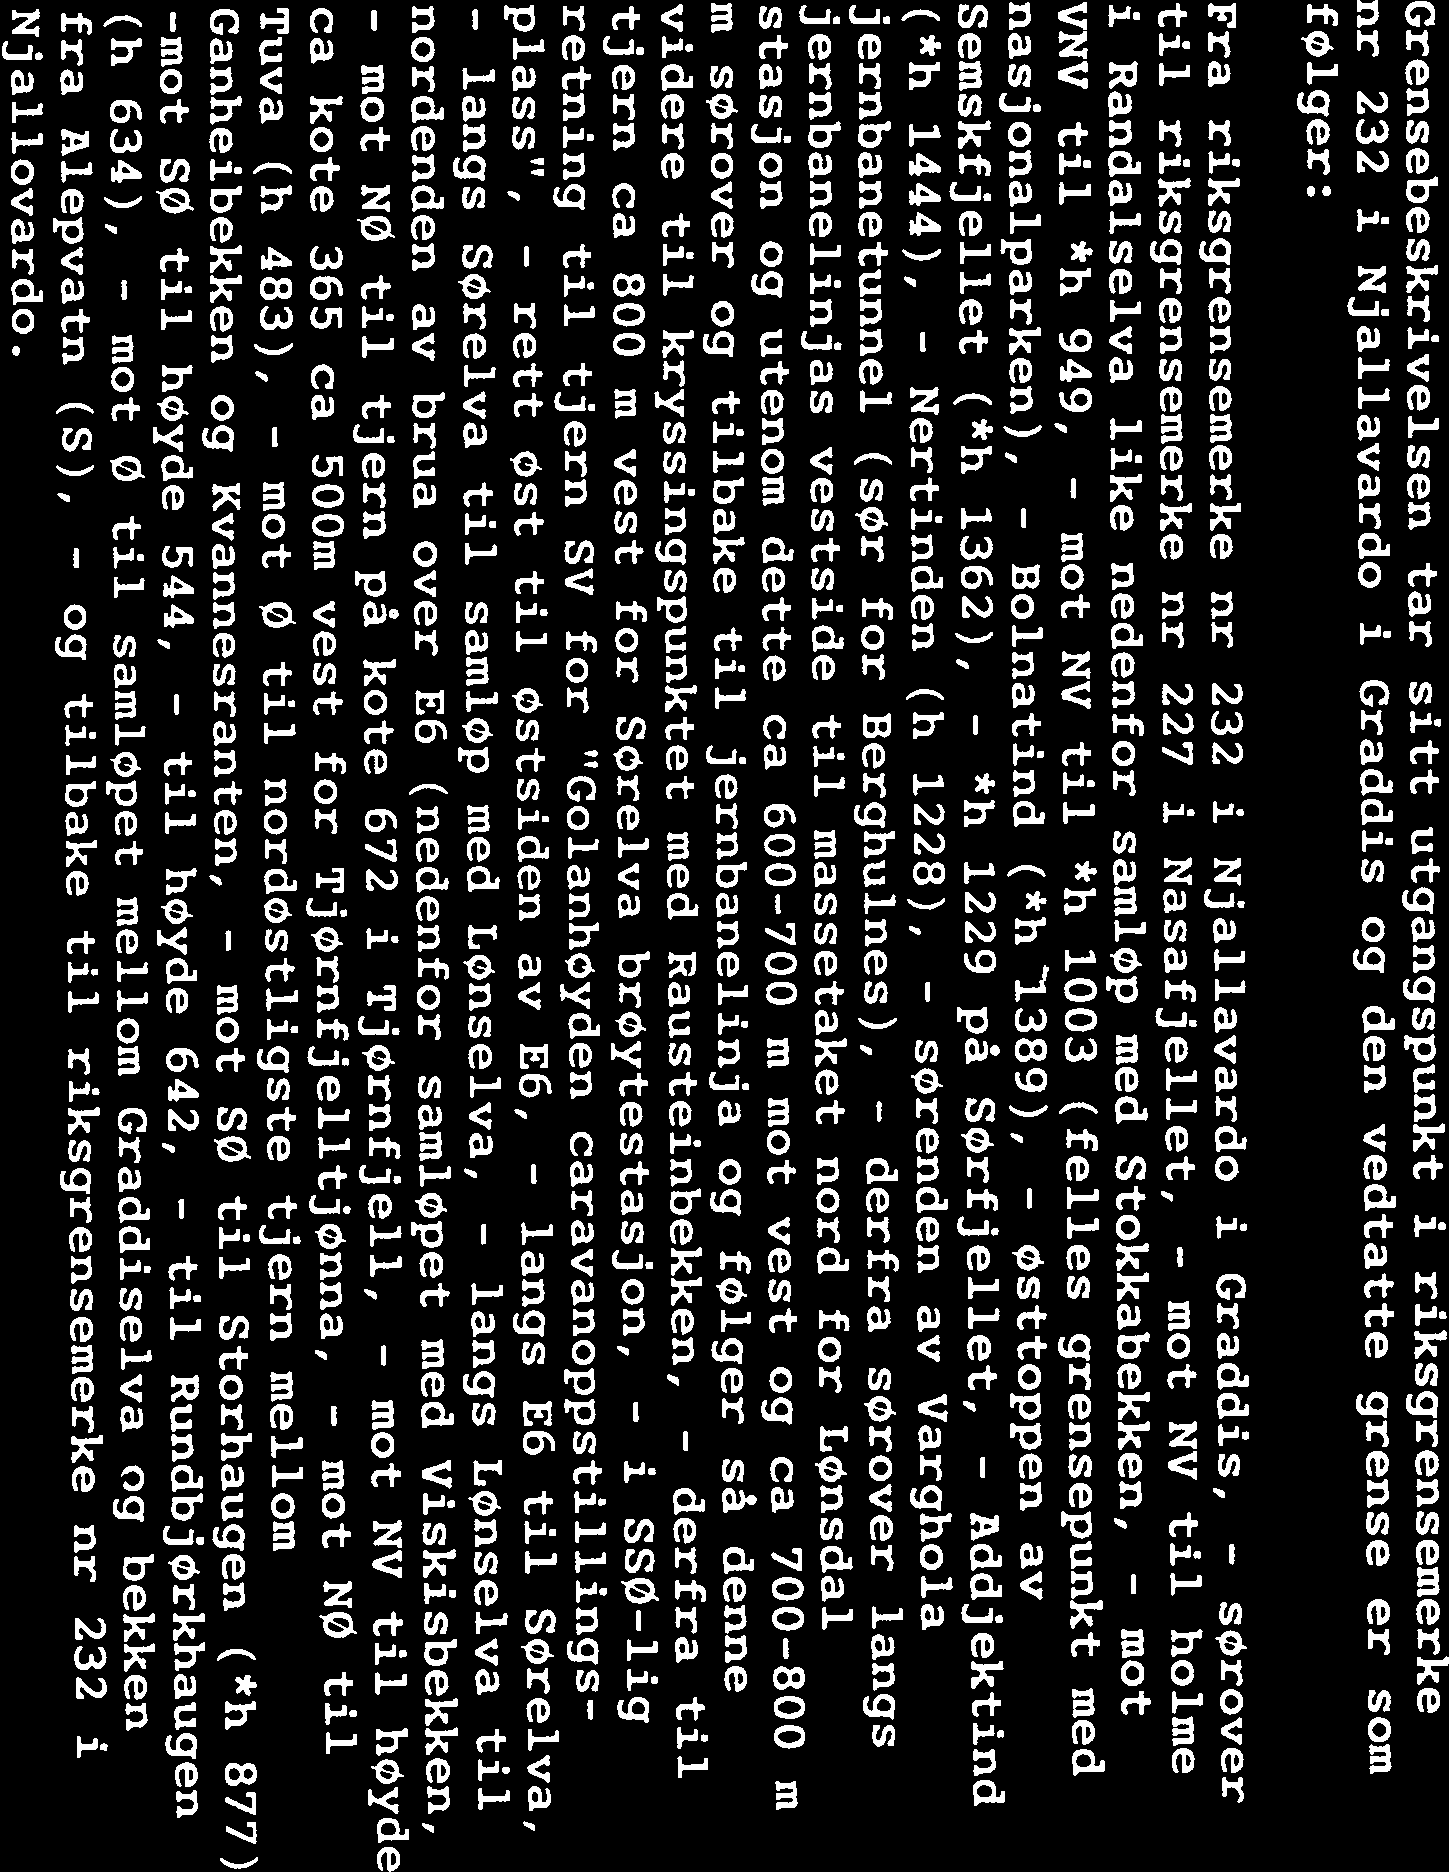 GRENSEBESKRIVELSE FOR SALTFJELLET LANDSKAPSVERNOMRÅDE: Opprettet av Regjeringen ved Kgl. res. av 08.09.1989.